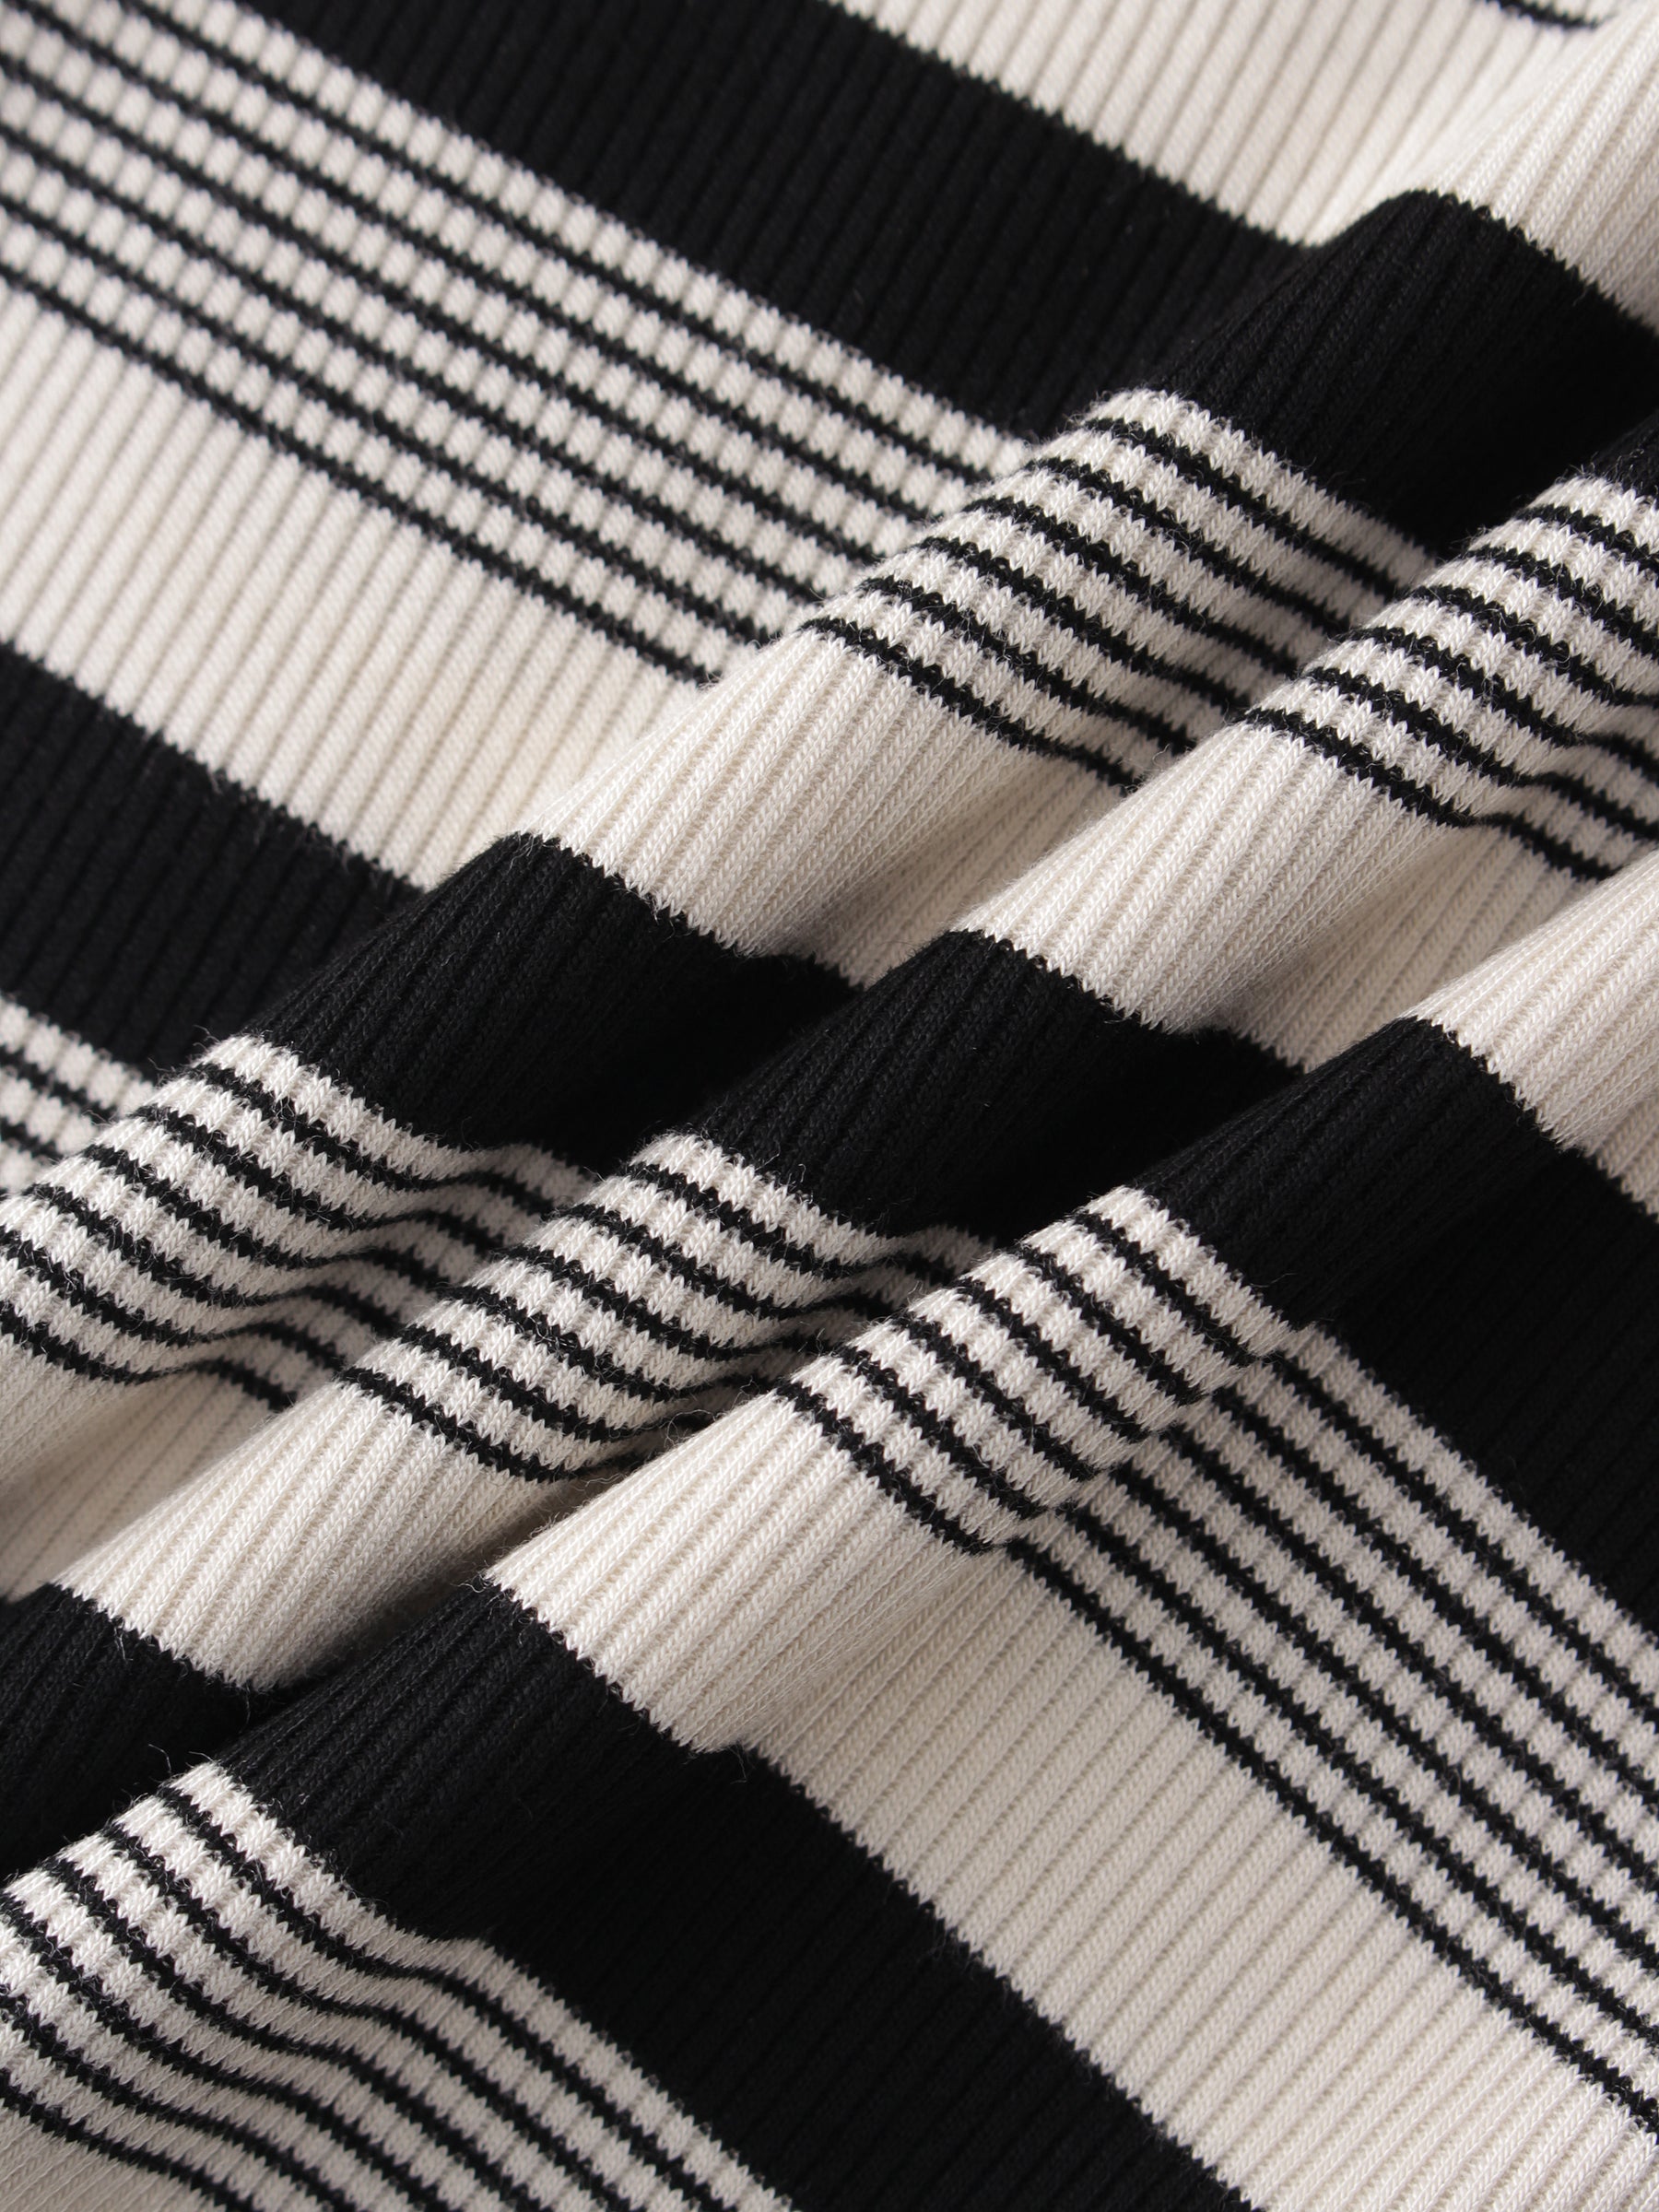 Striped Wrap Tee-Black/White Multi Stripe